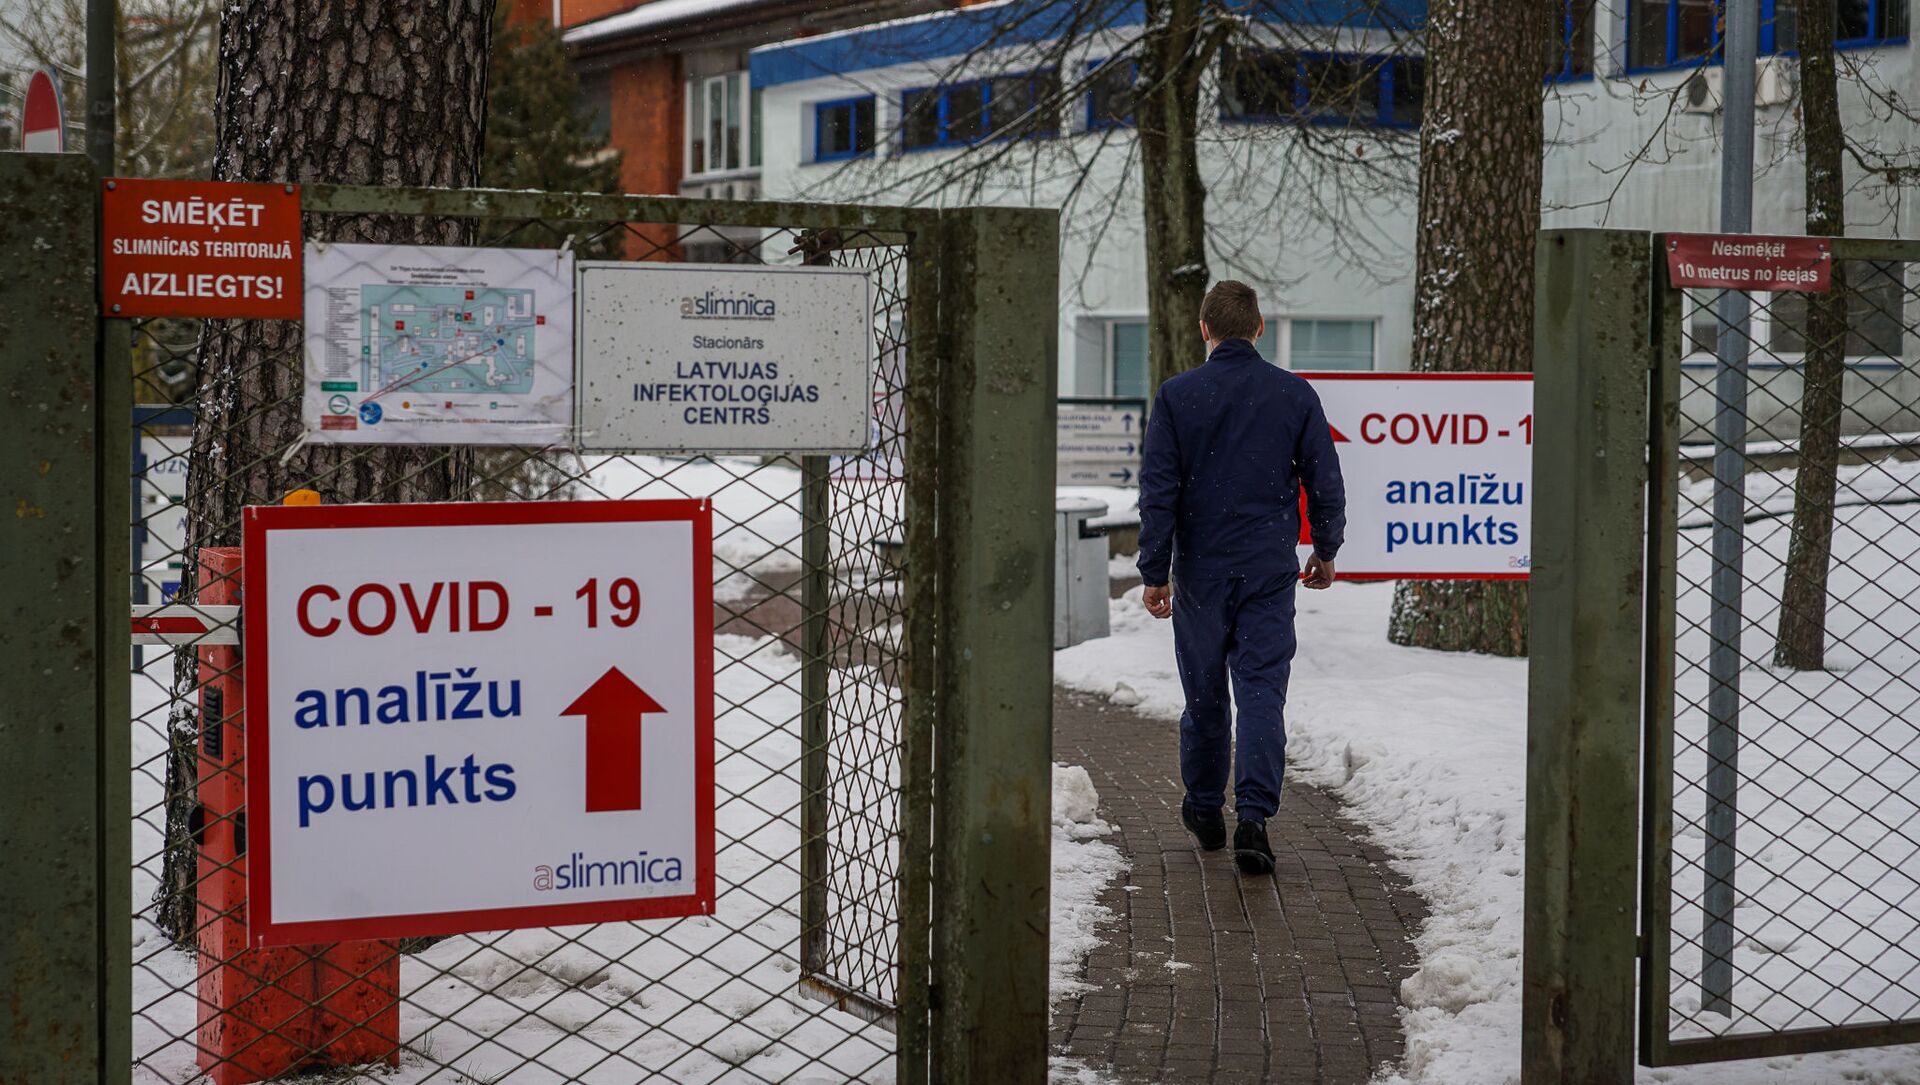 Мужчина направляется в пункт приема тестов на COVID-19 в Латвийском центре инфектологии - Sputnik Латвия, 1920, 03.02.2021